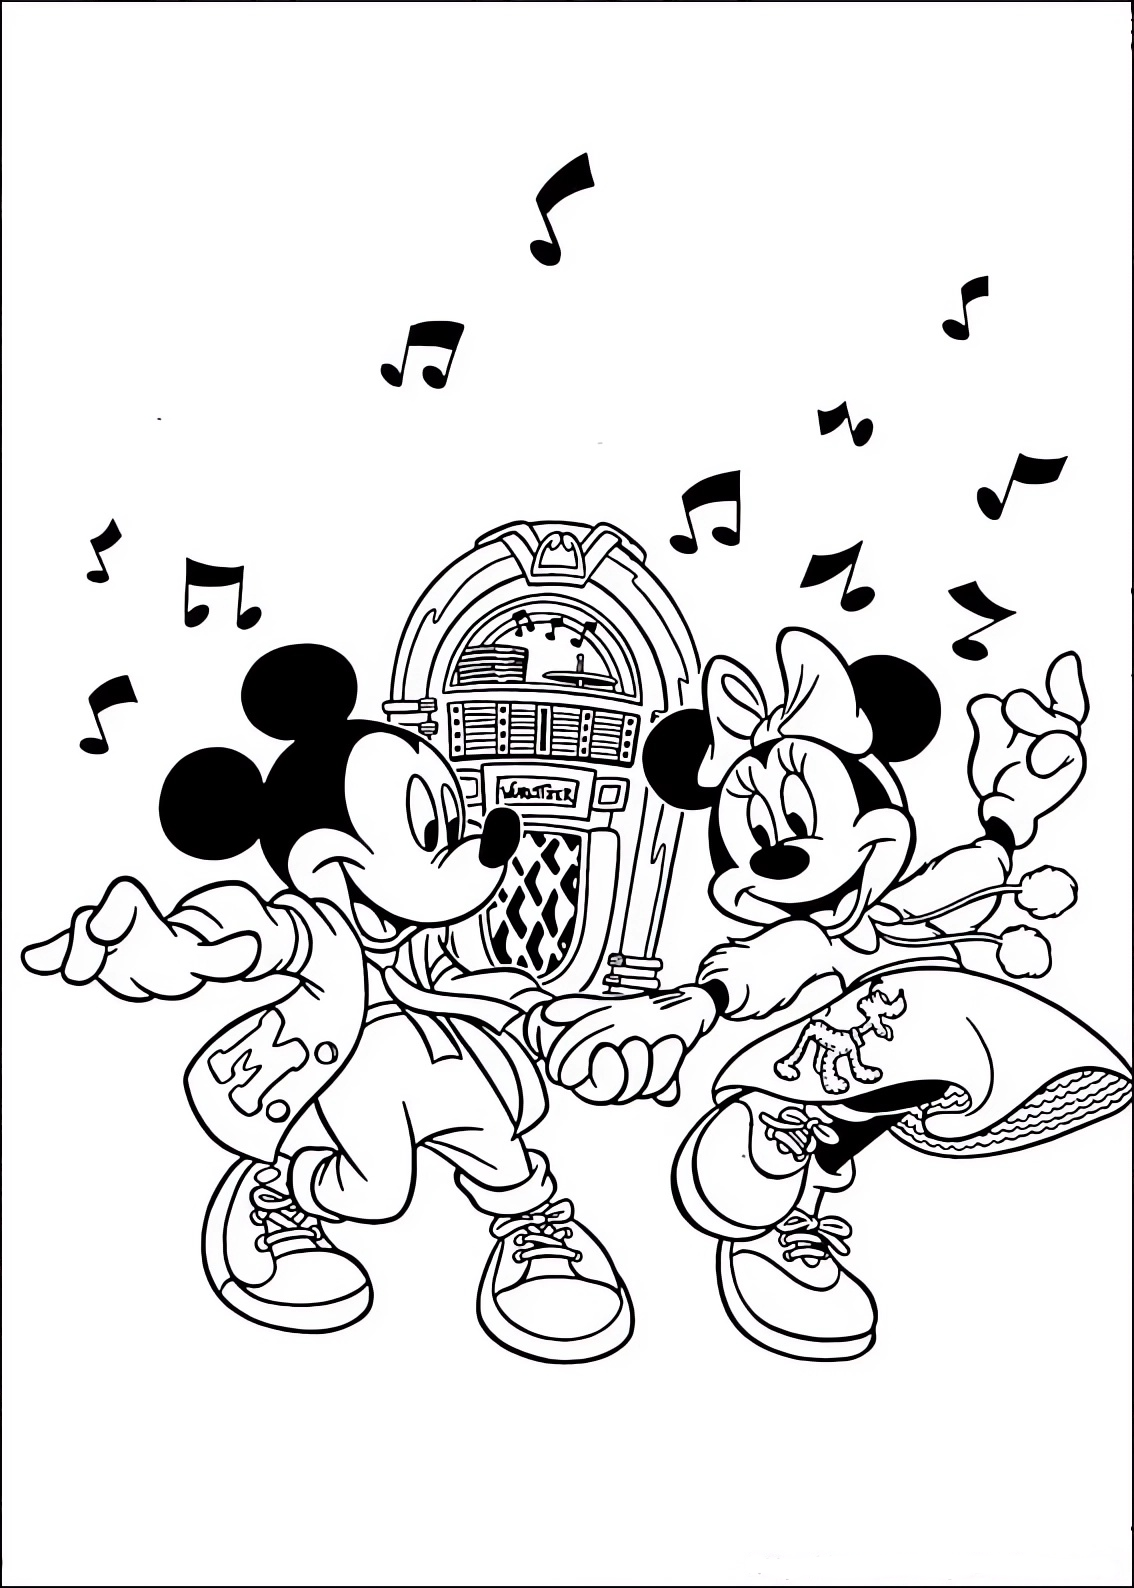 Disegno da colorare di Minnie e Topolino (Mickey Mouse) che ballano il Rock 'n Roll